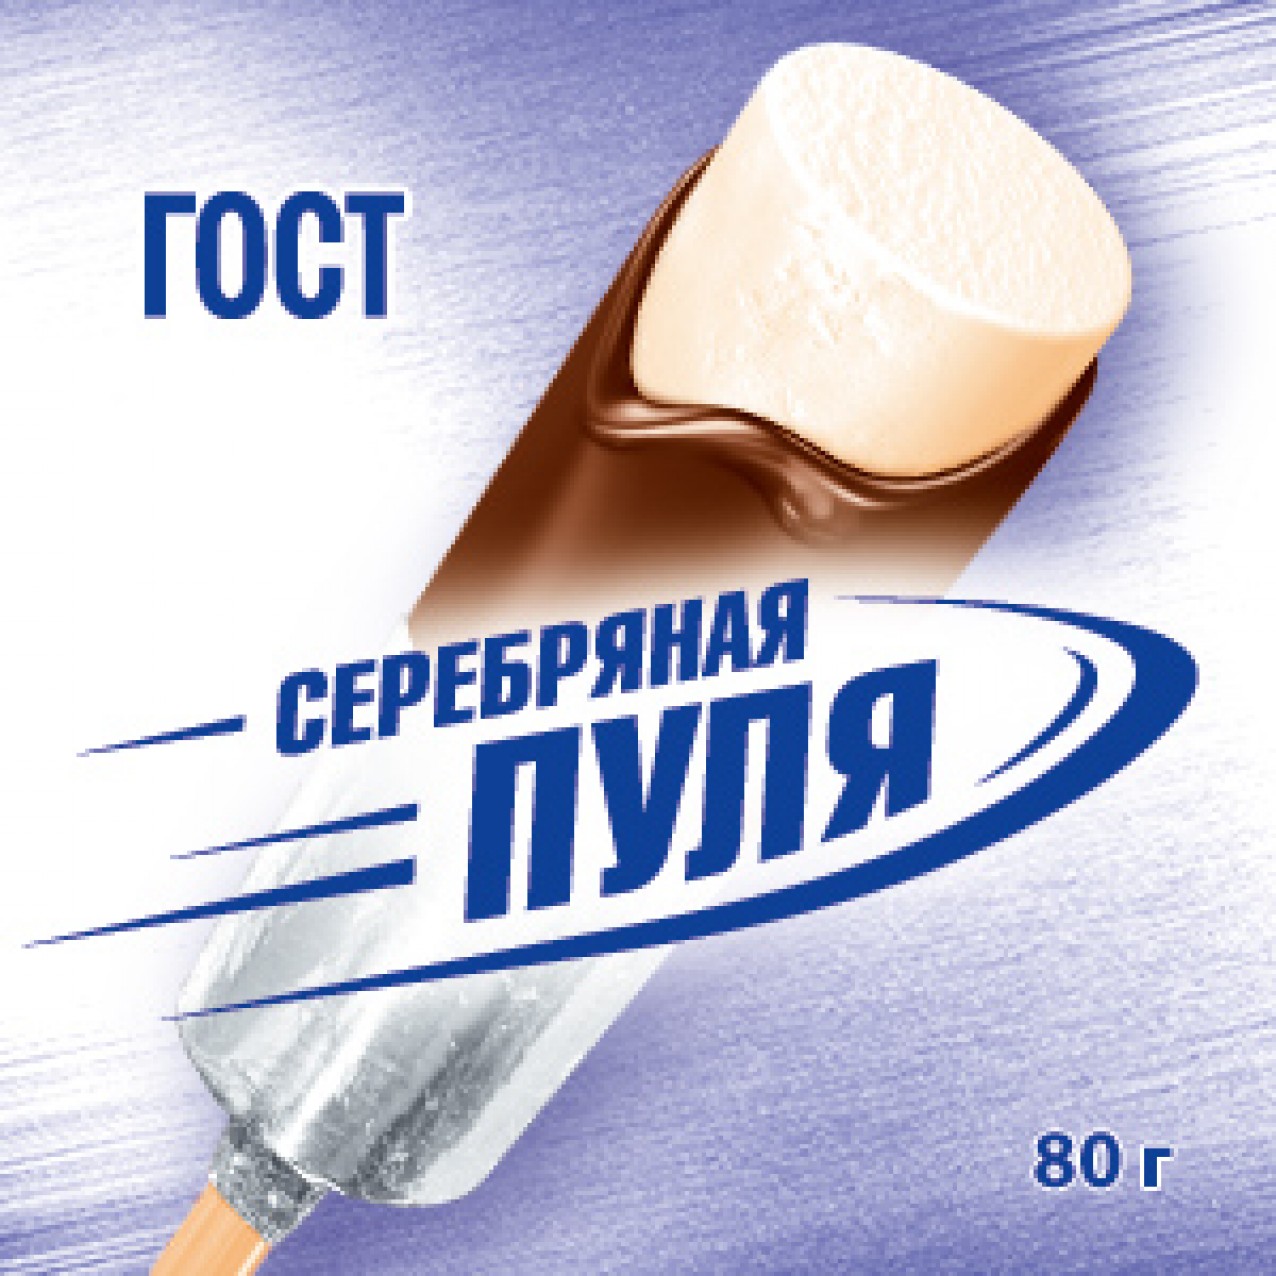 Русский холод серебряная пуля пломбир в Молочном шоколаде эскимо